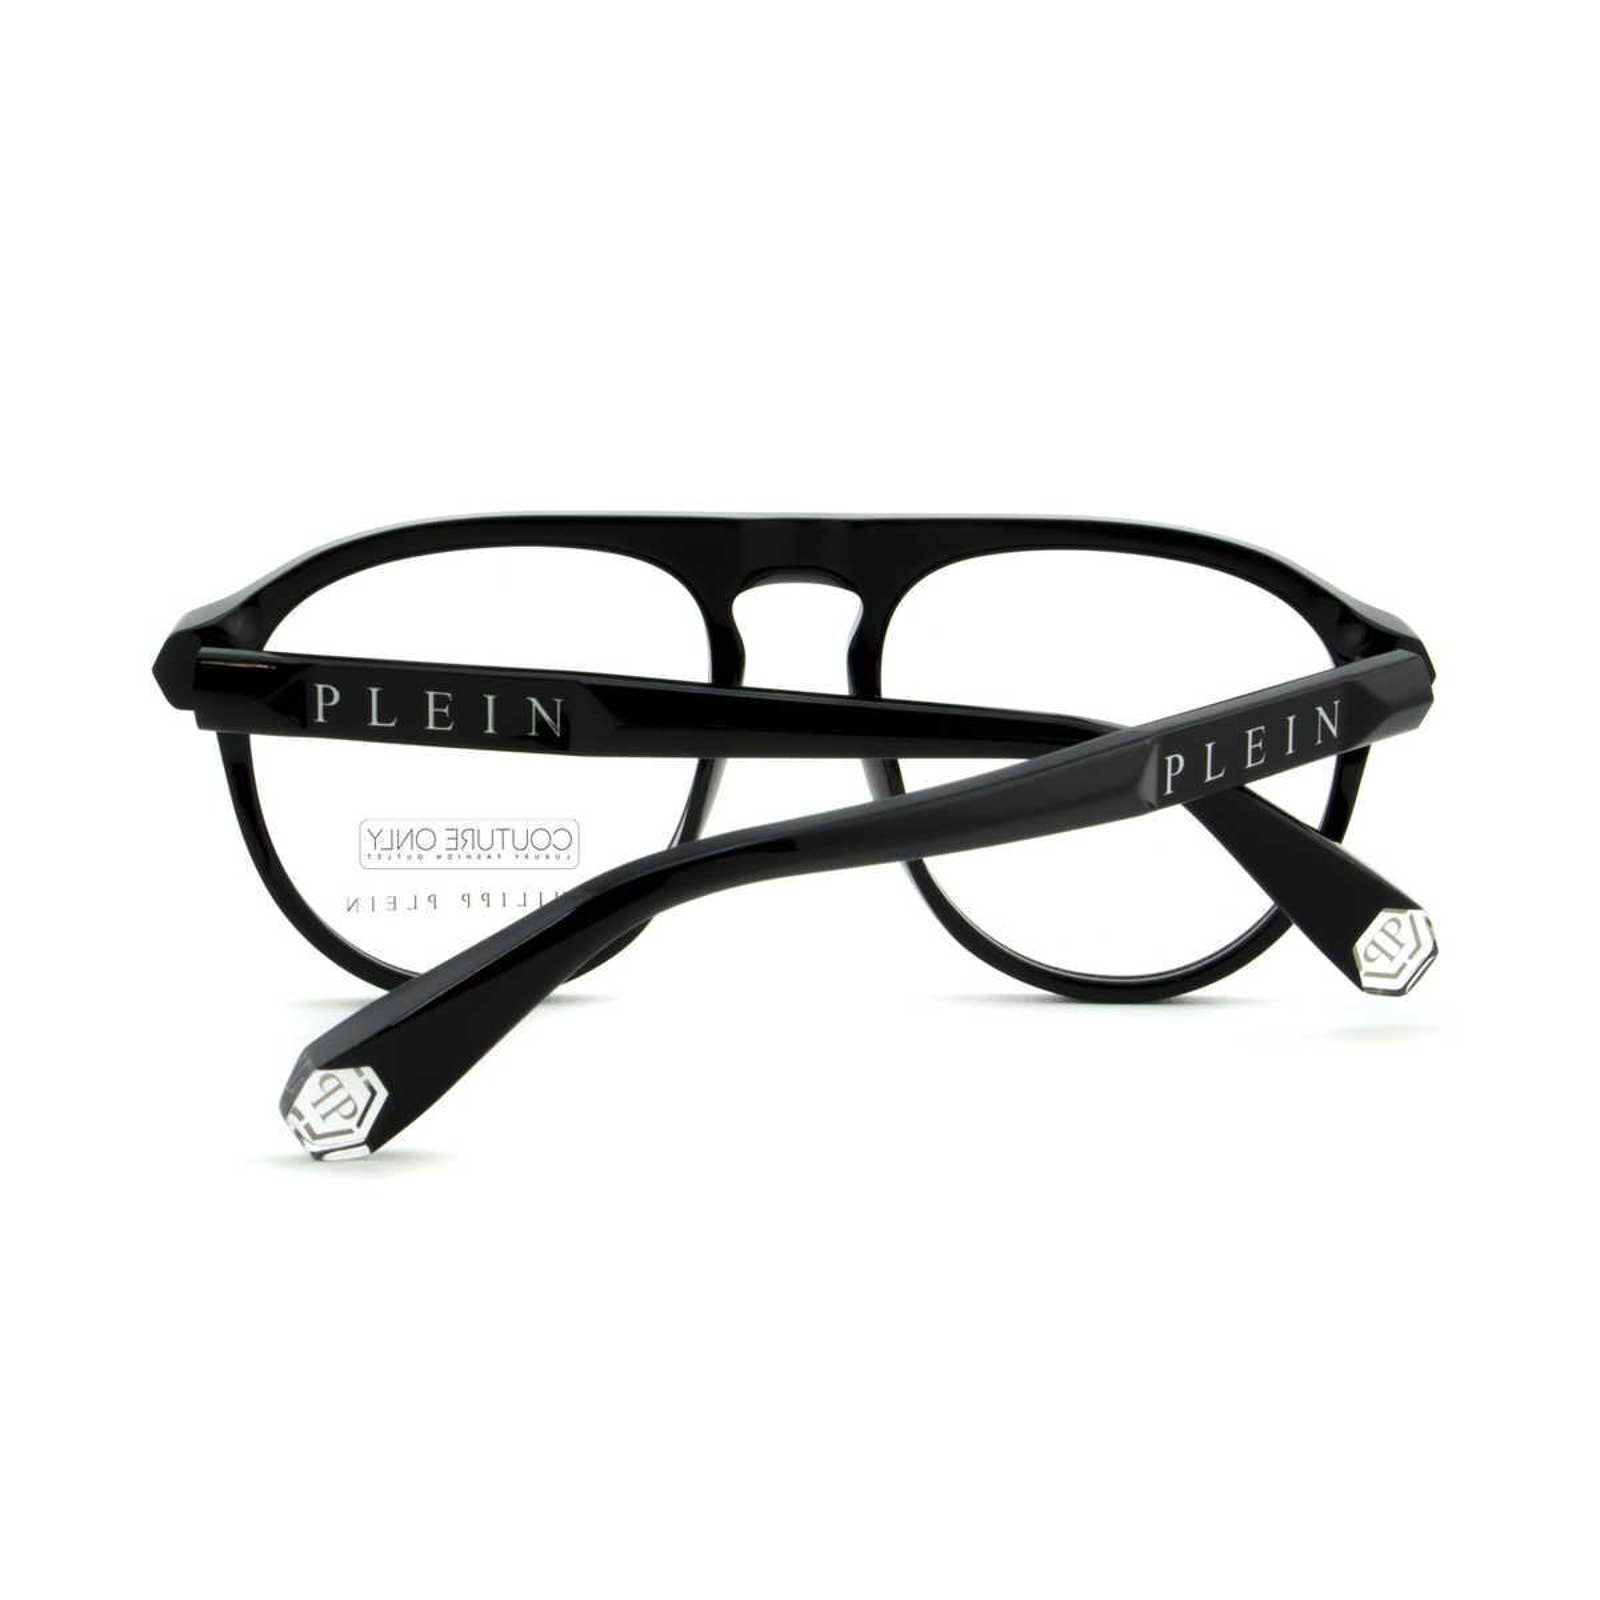 Men Optical Glasses Oval Aviator Black VPP016M-0700